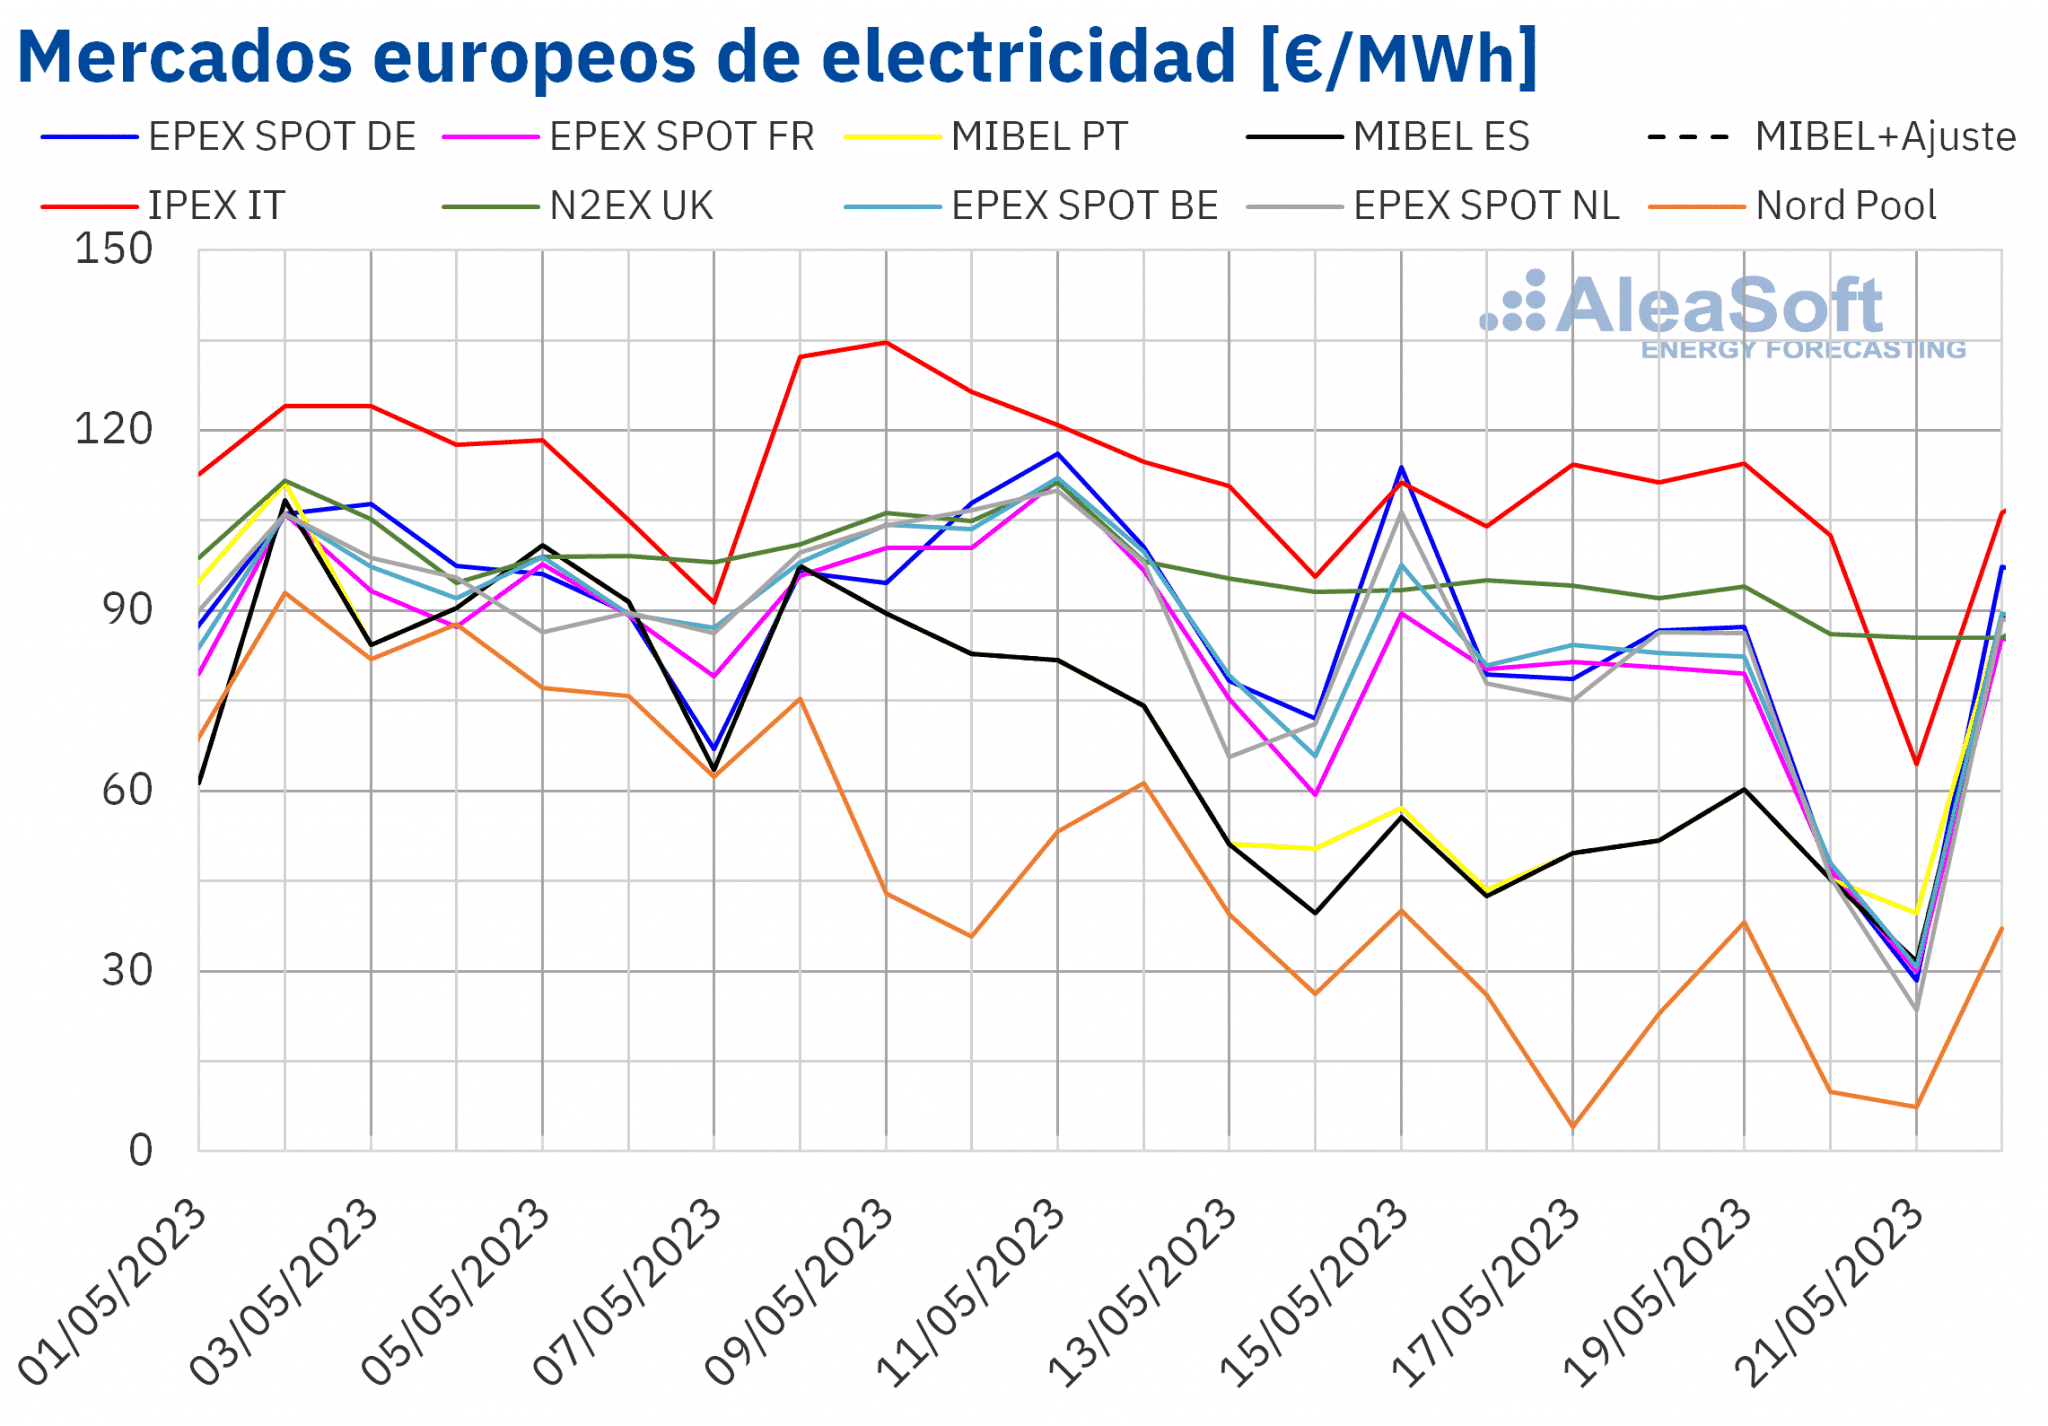 AleaSoft - Precios mercados europeos electricidad